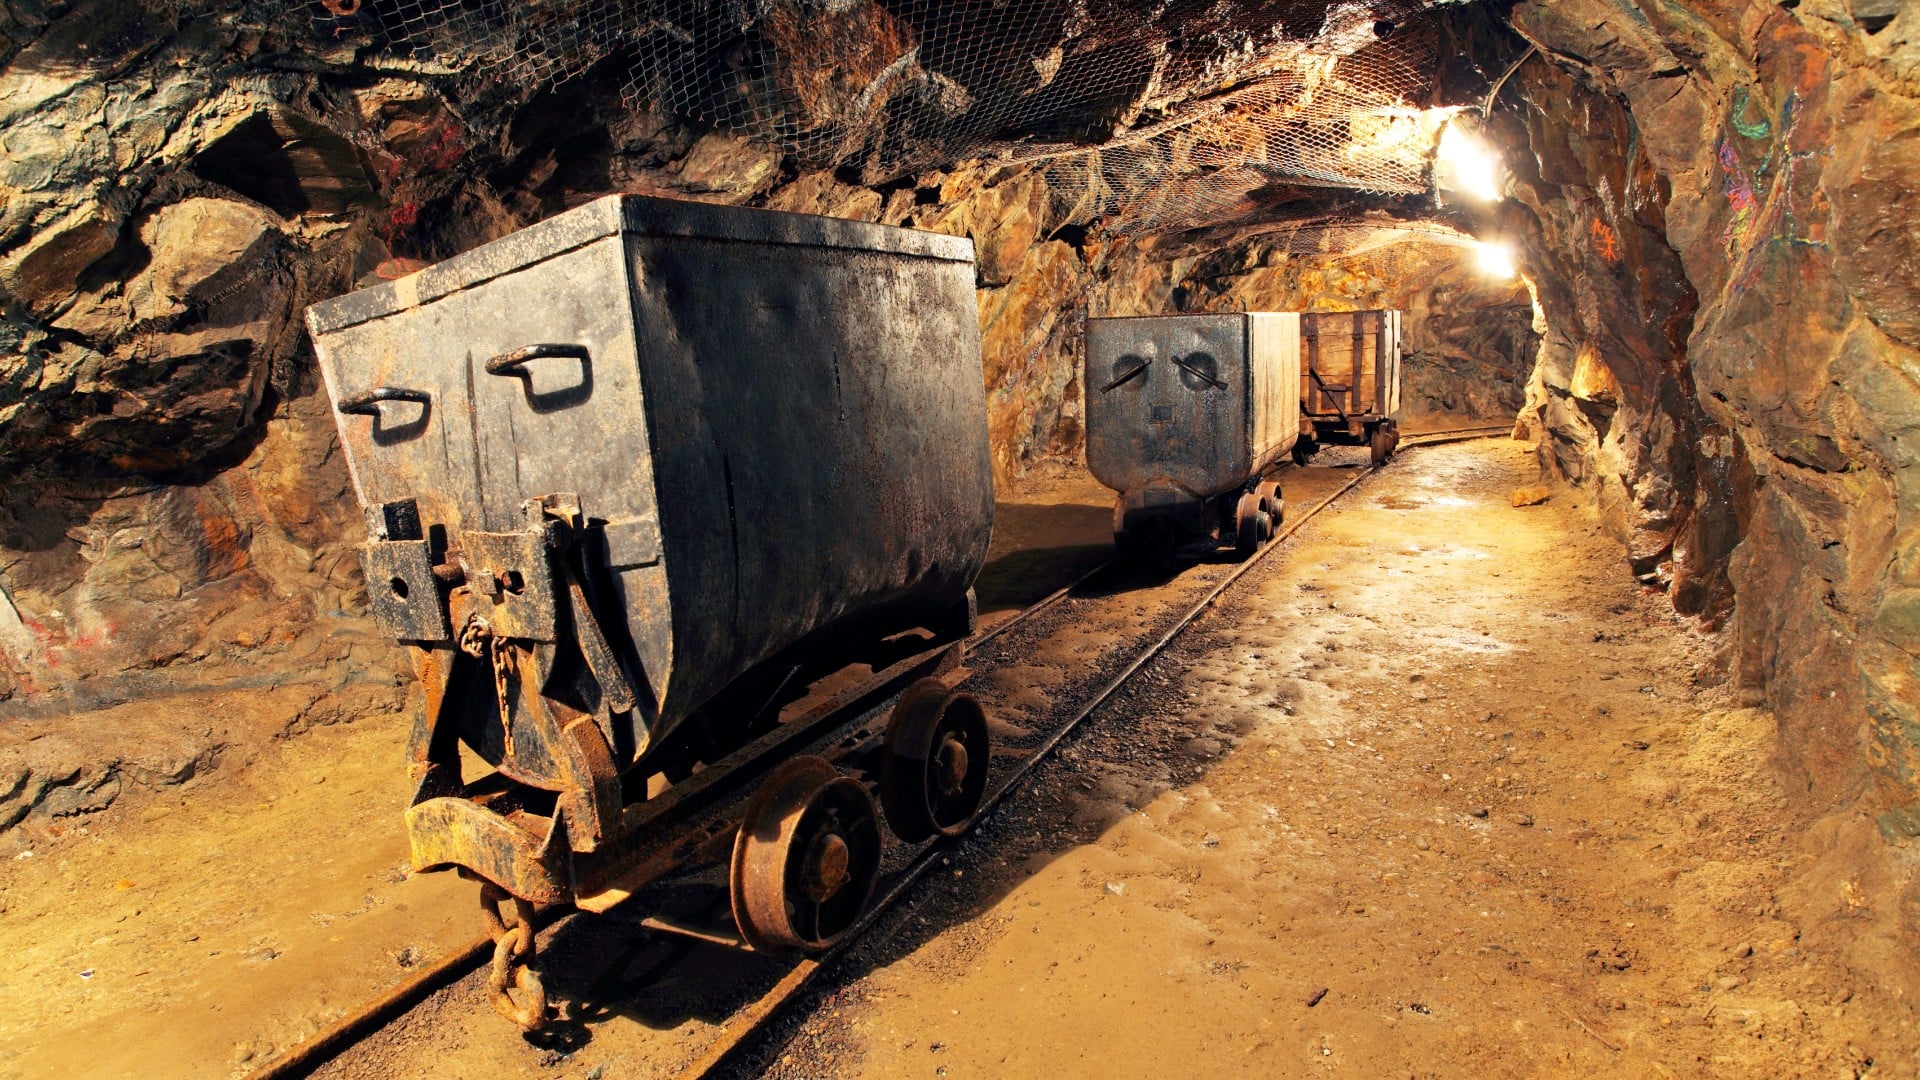 a mining cart